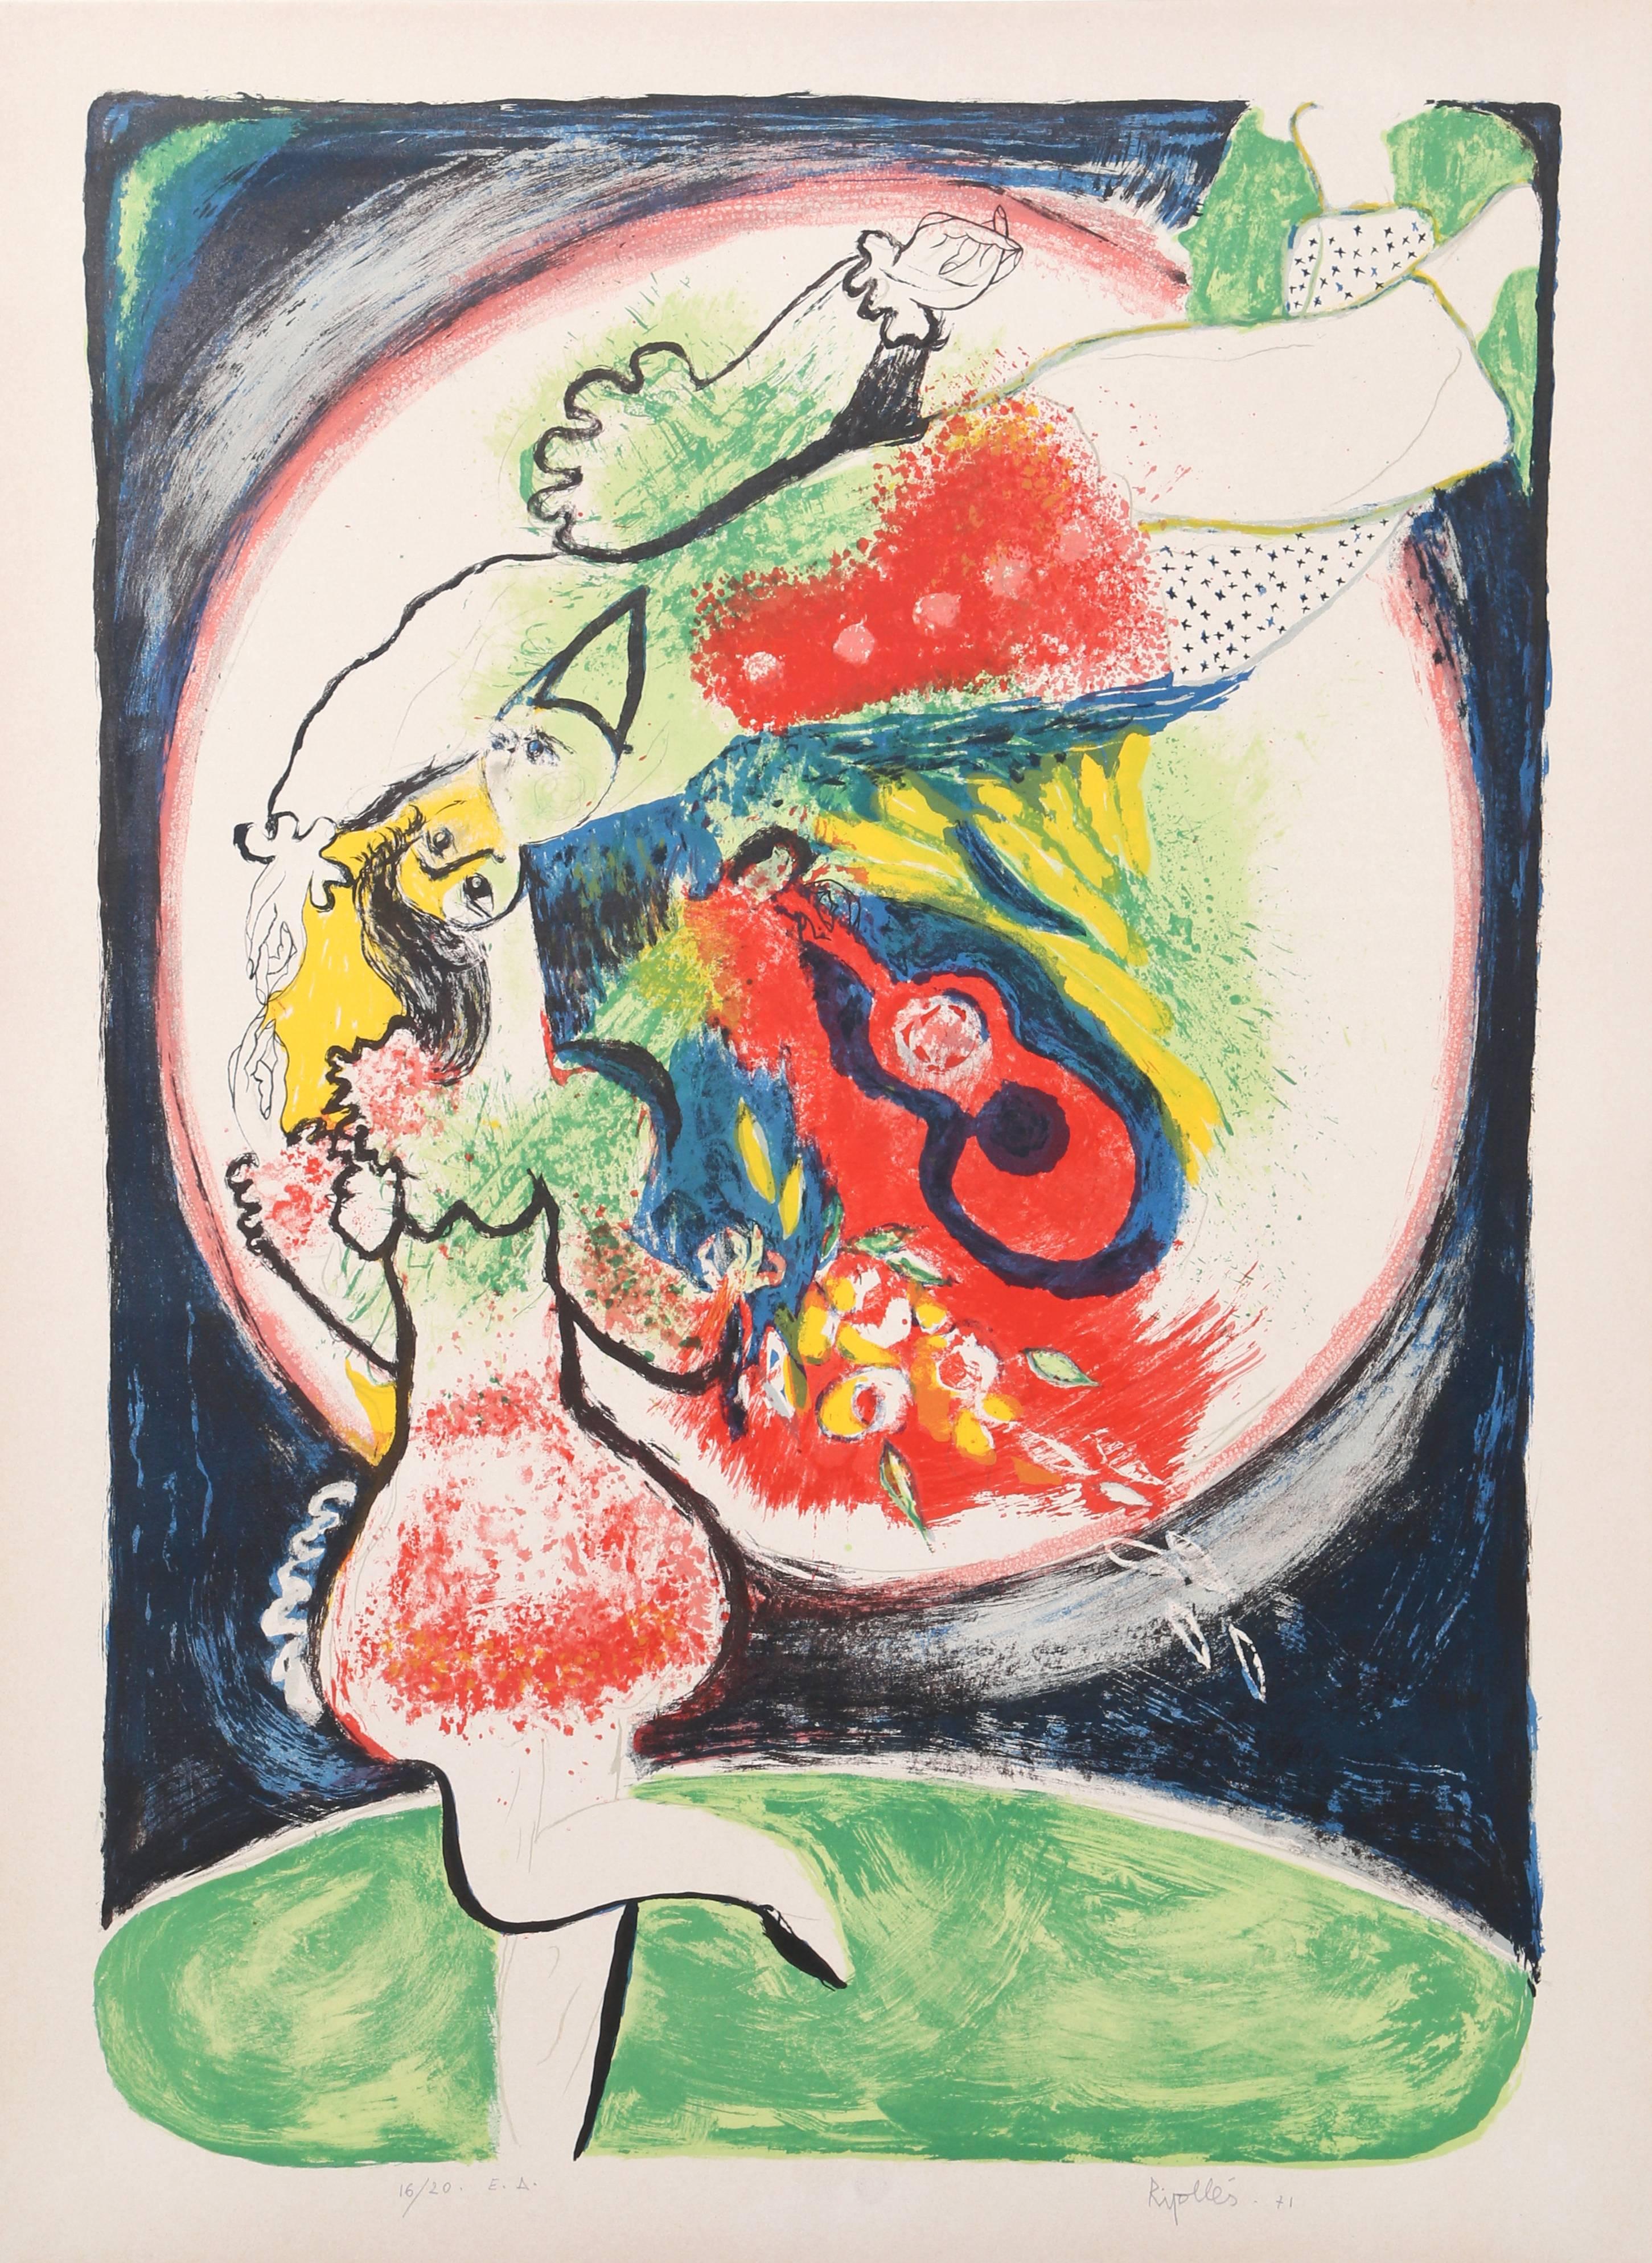 Artistics : Juan Garcia Ripolles, Espagnol (1932 - )
Titre : Couple de baisers
Année : 1971
Support : Lithographie, signée au crayon
Édition : E.A. 20
Taille : 29.5 in. x 22 in. (74.93 cm x 55.88 cm)